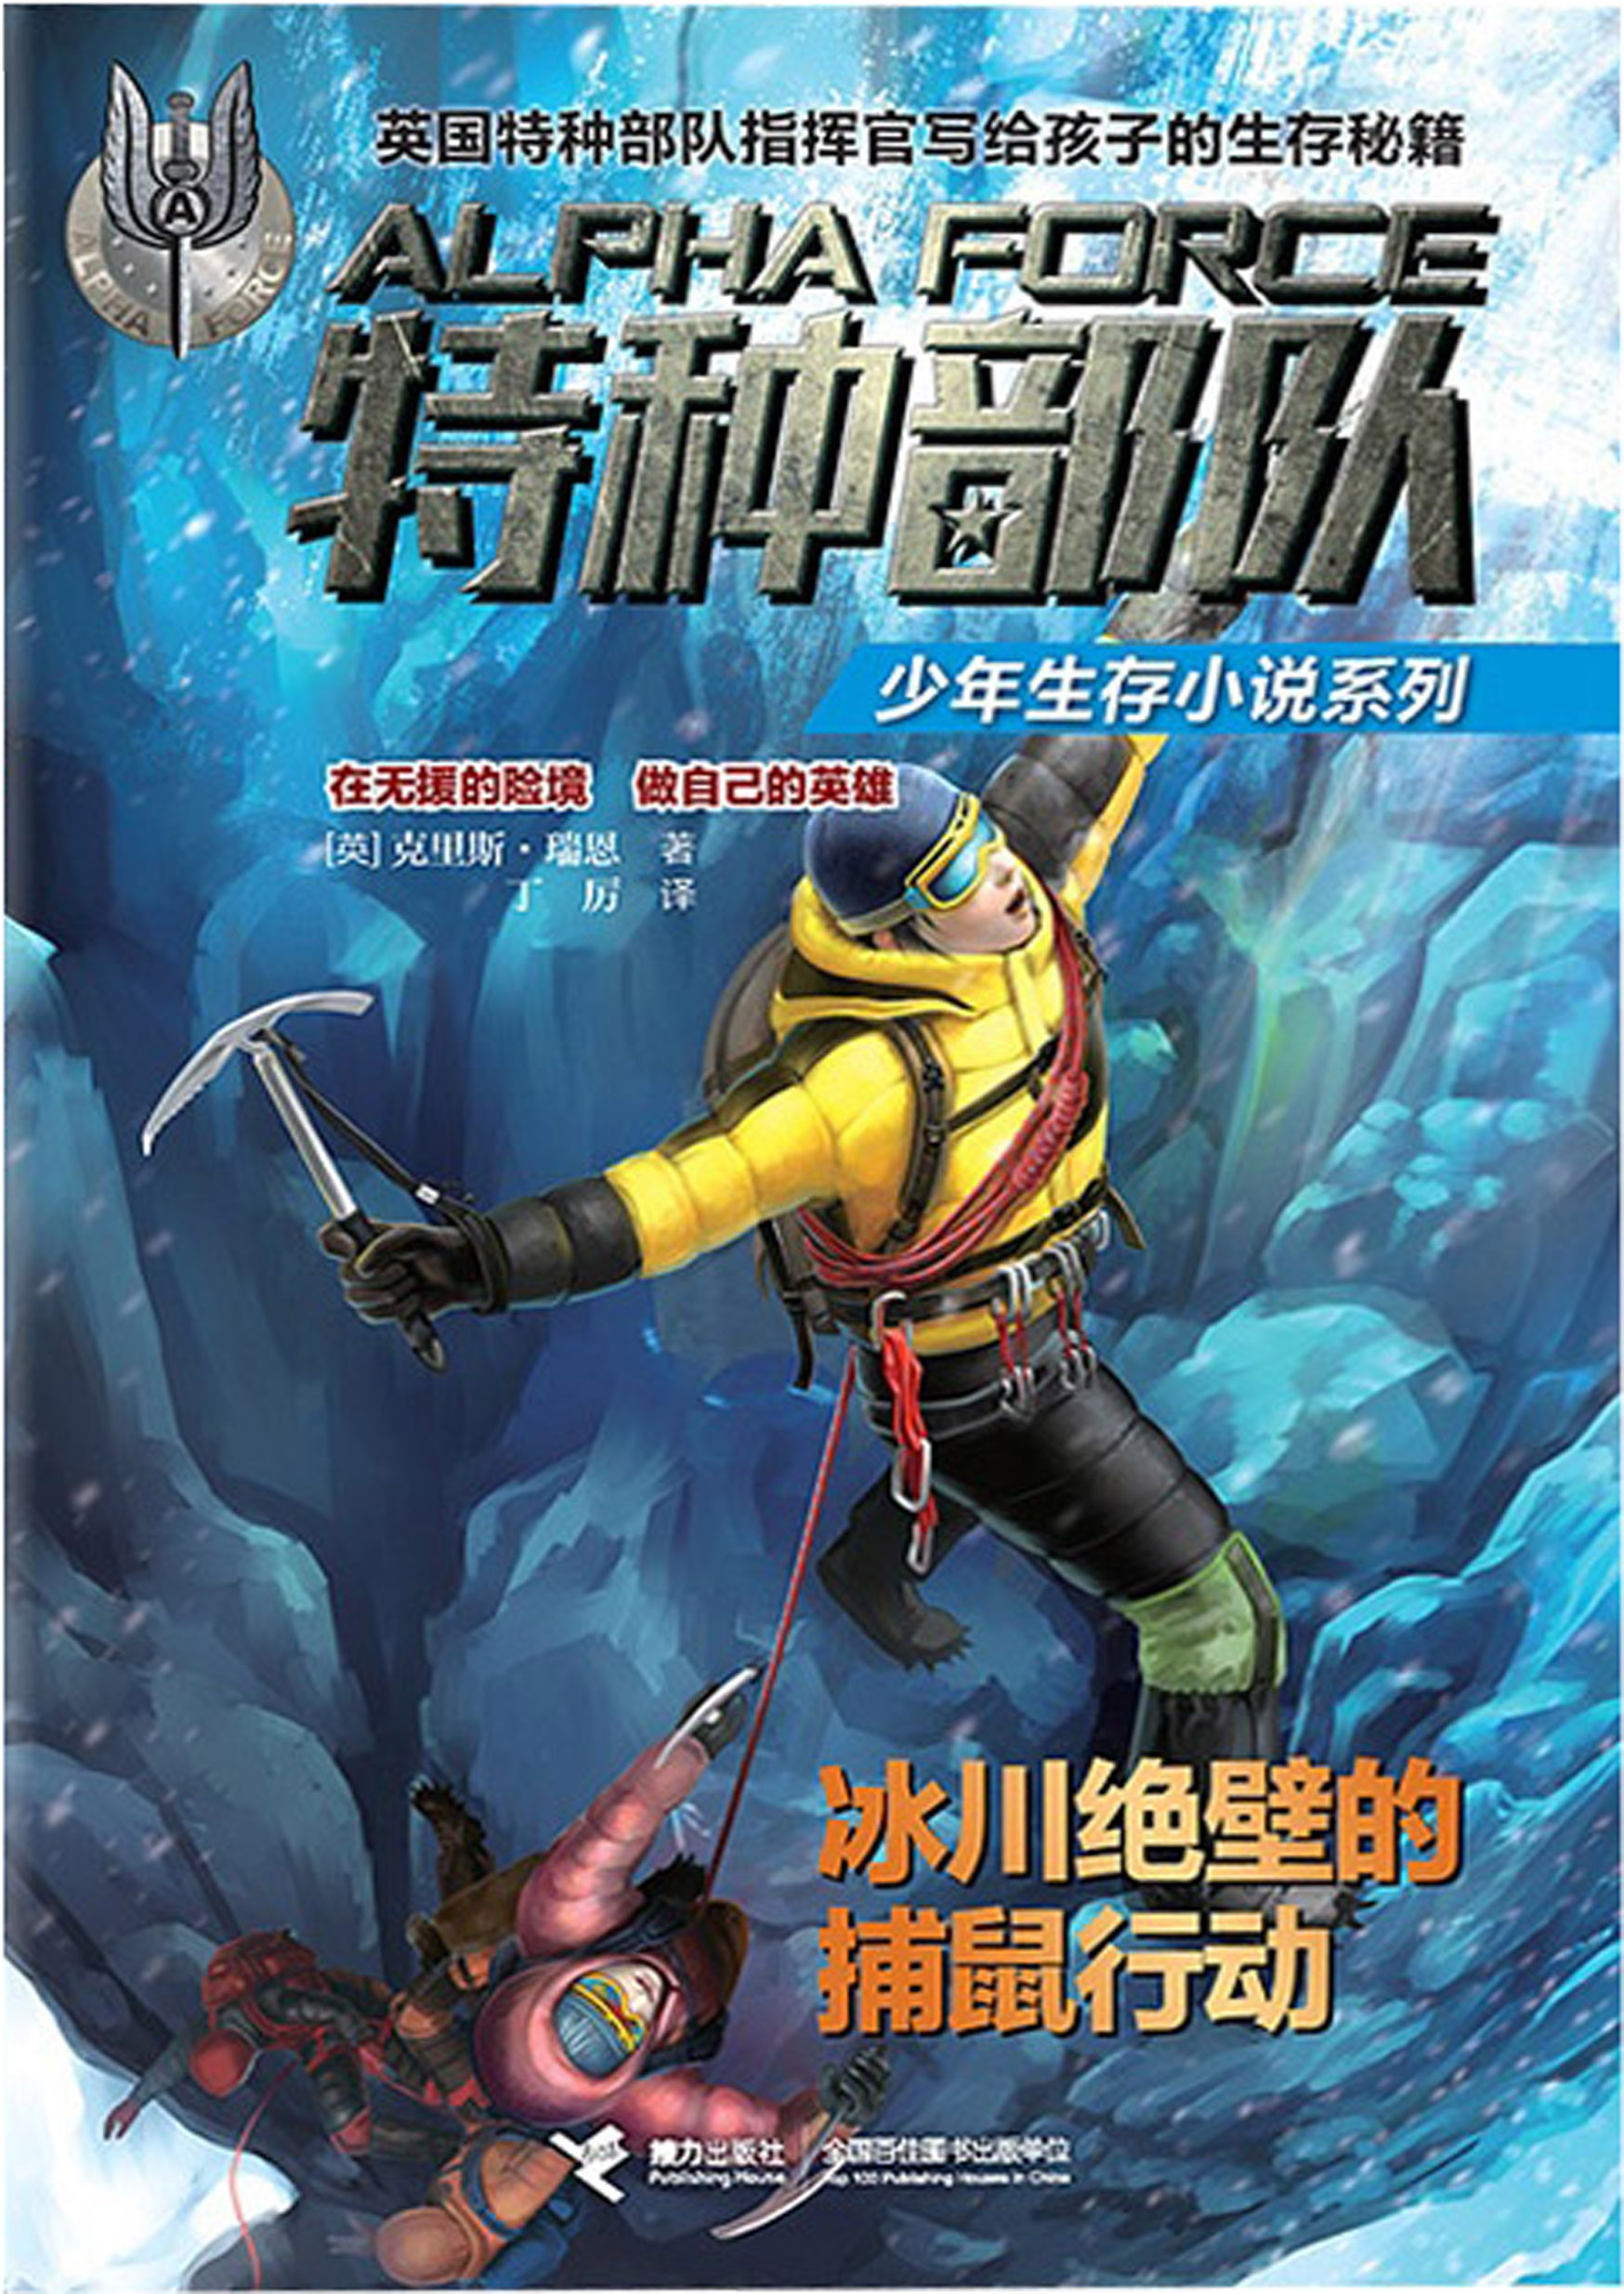 特种部队少年生存小说系列:冰川绝壁的捕鼠行动